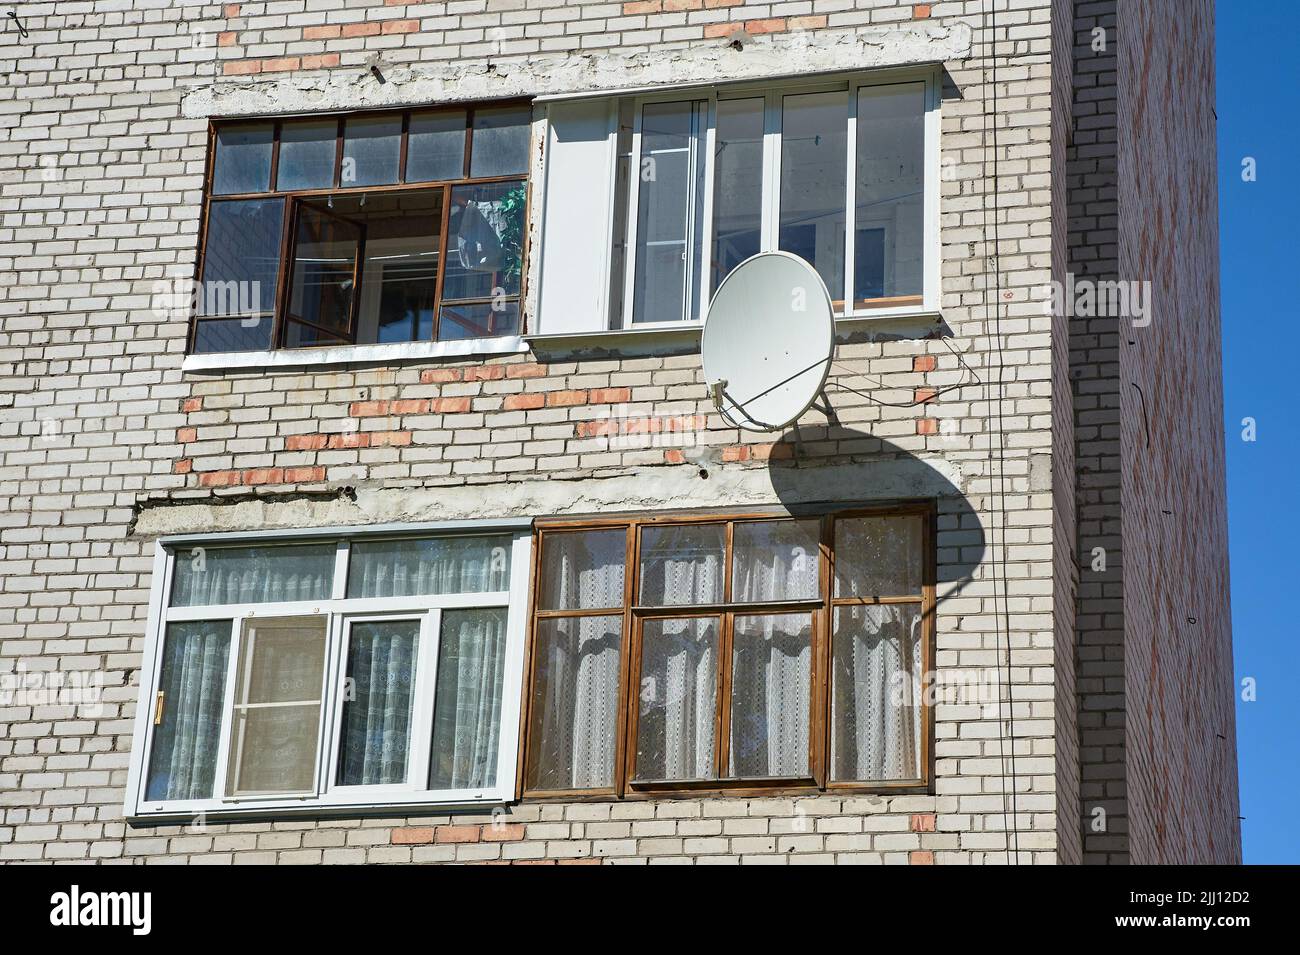 Un plat satellite est suspendu sur le mur d'une maison en brique Banque D'Images